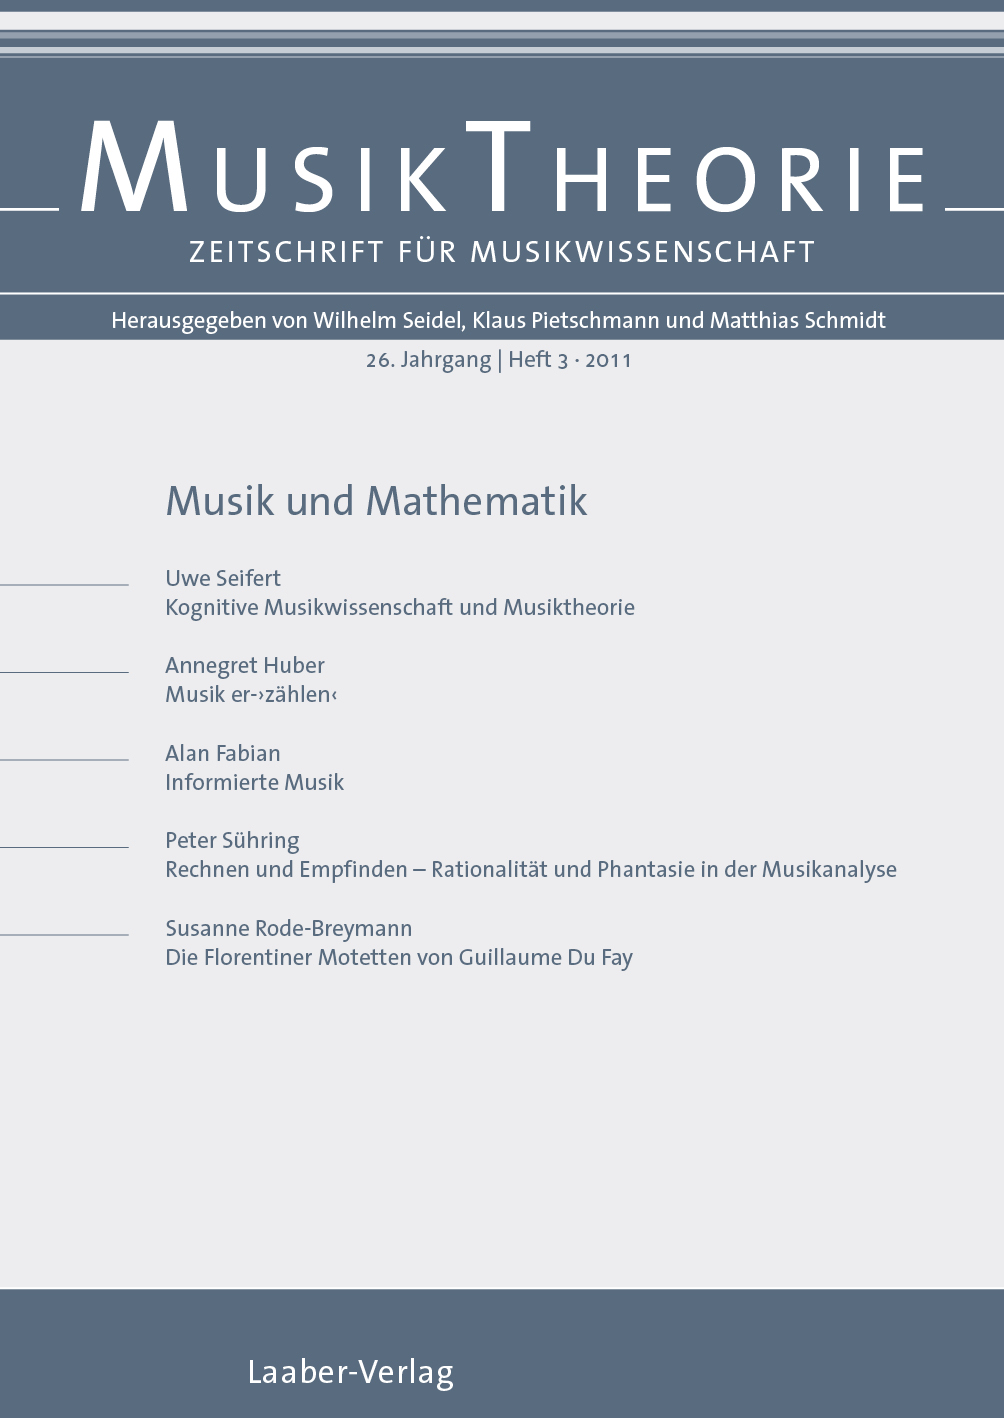 Musiktheorie Heft 3/2011